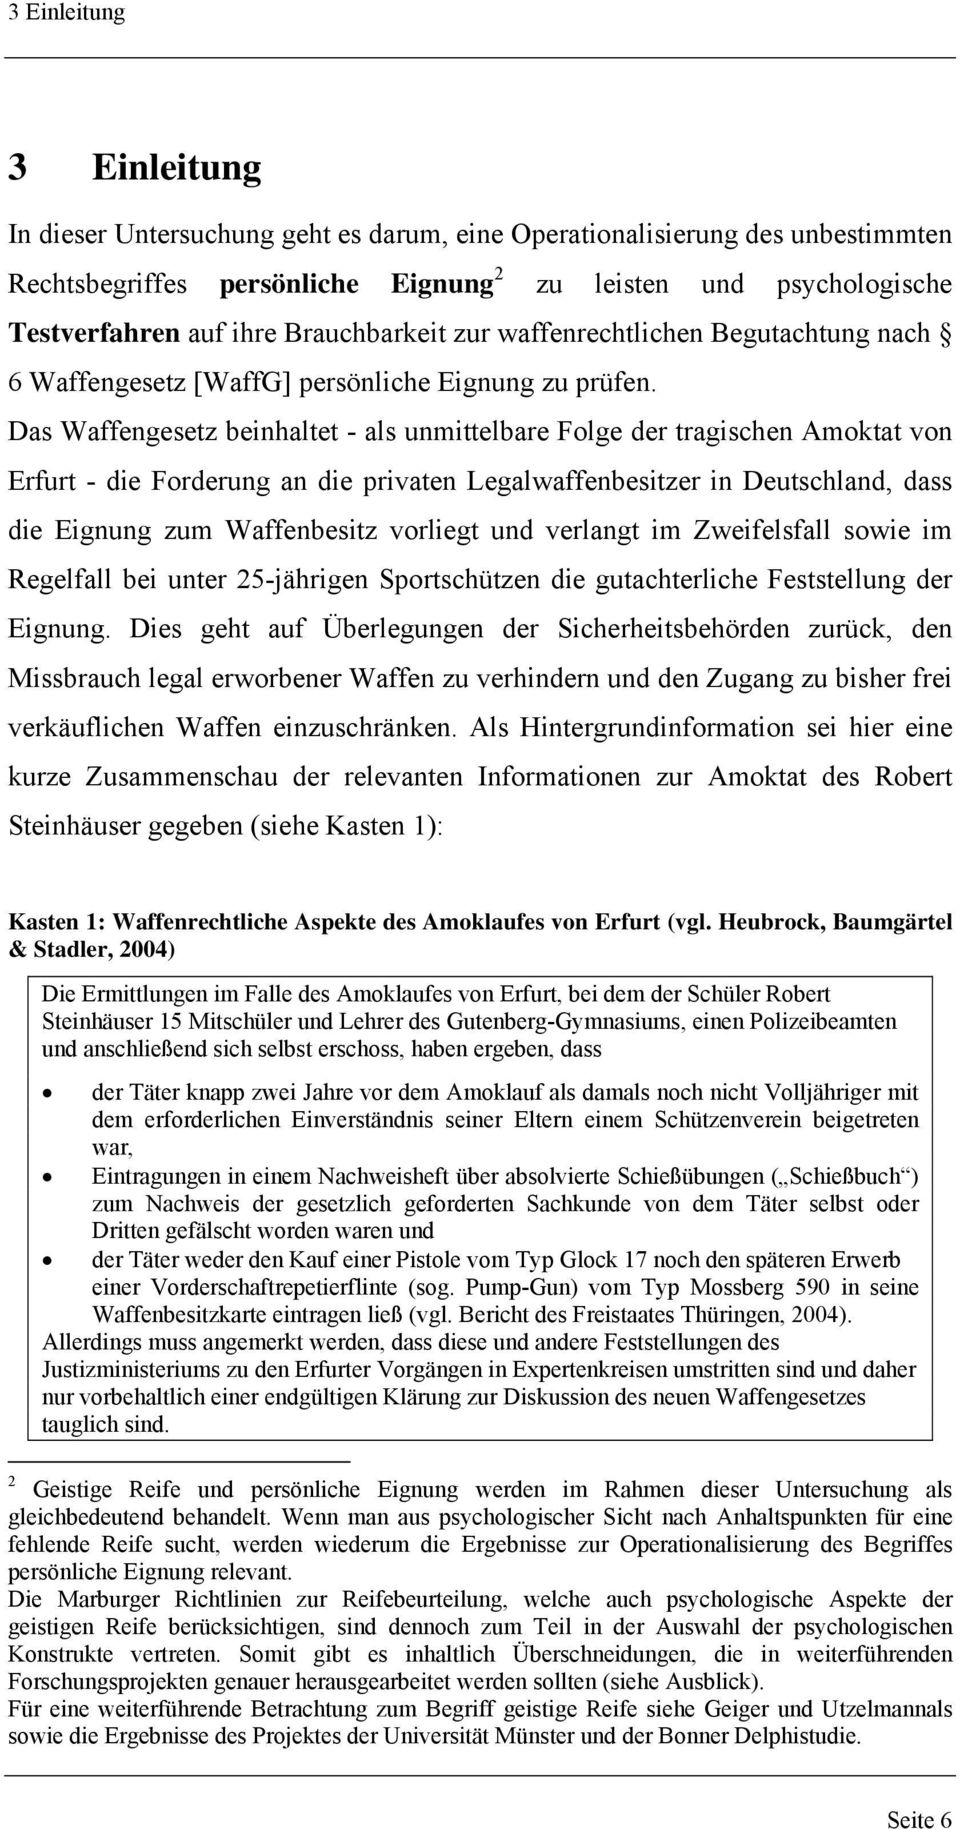 Das Waffengesetz beinhaltet - als unmittelbare Folge der tragischen Amoktat von Erfurt - die Forderung an die privaten Legalwaffenbesitzer in Deutschland, dass die Eignung zum Waffenbesitz vorliegt